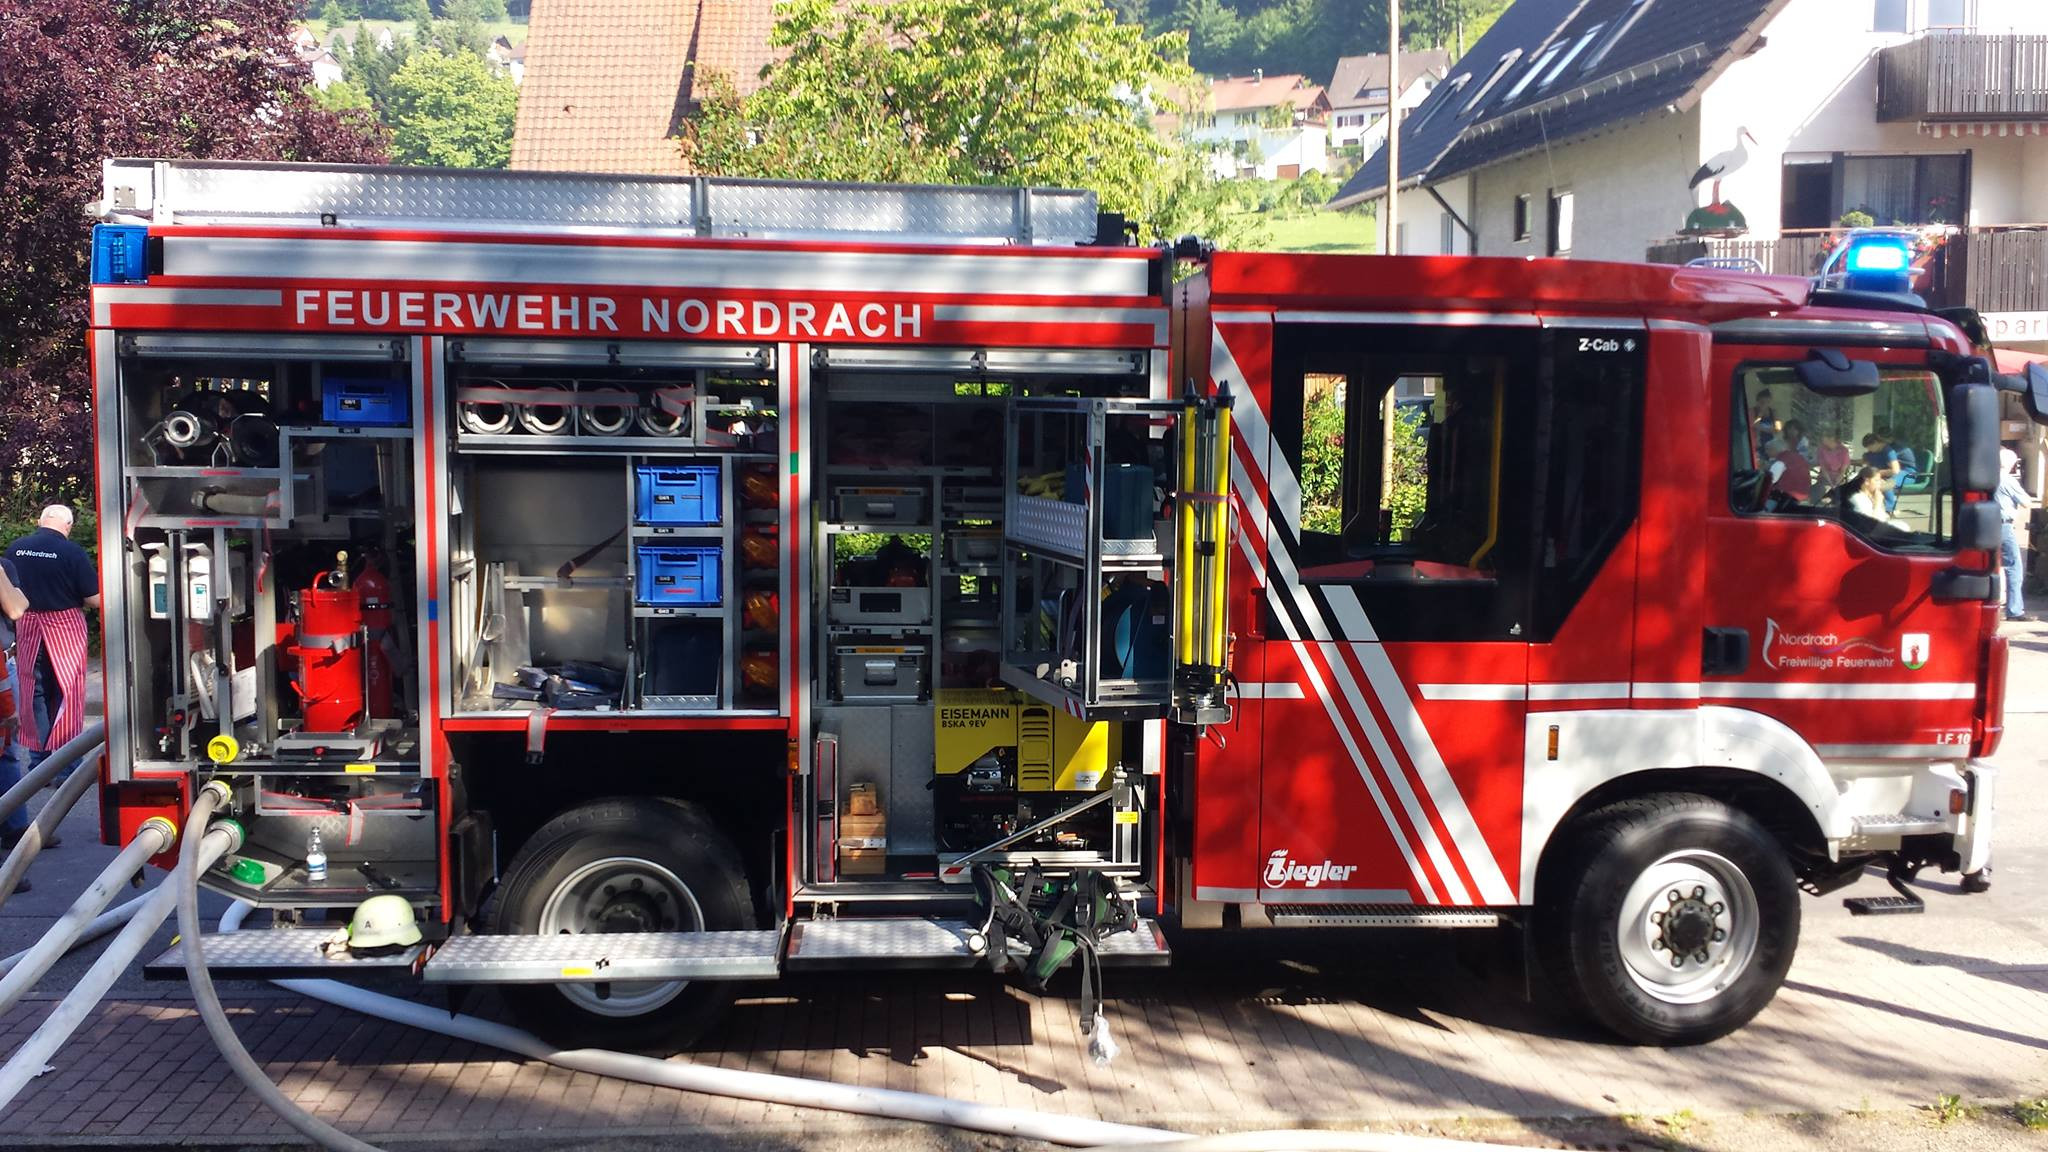 Sommerfest der Feuerwehr / Urheber: Feuerwehr Nordrach, © Feuerwehr Nordrach